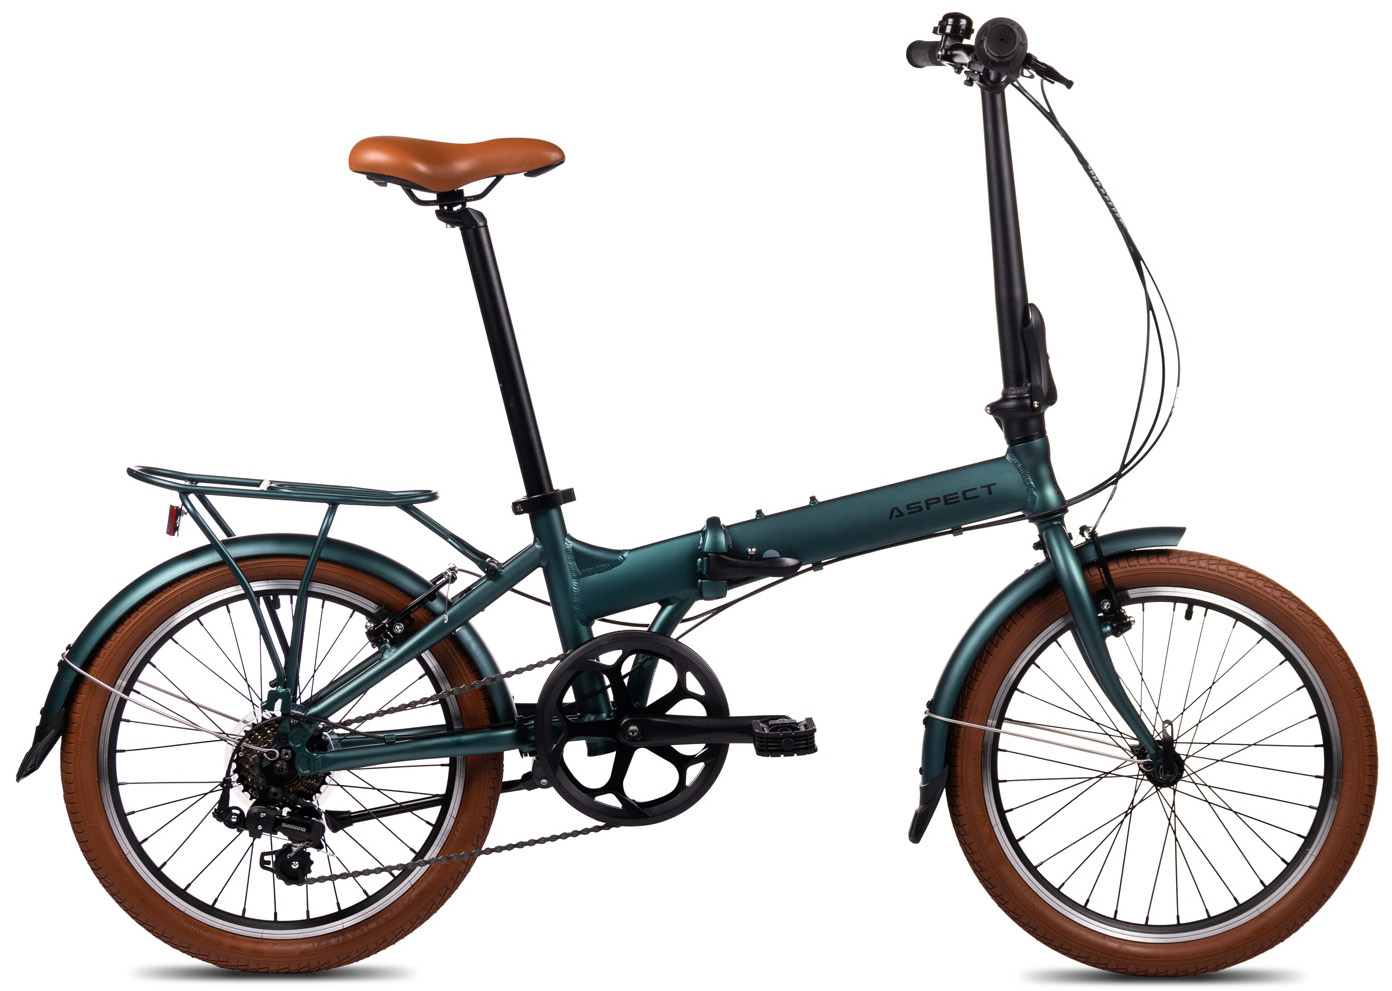  Отзывы о Складном велосипеде Aspect Borneo 7 2022